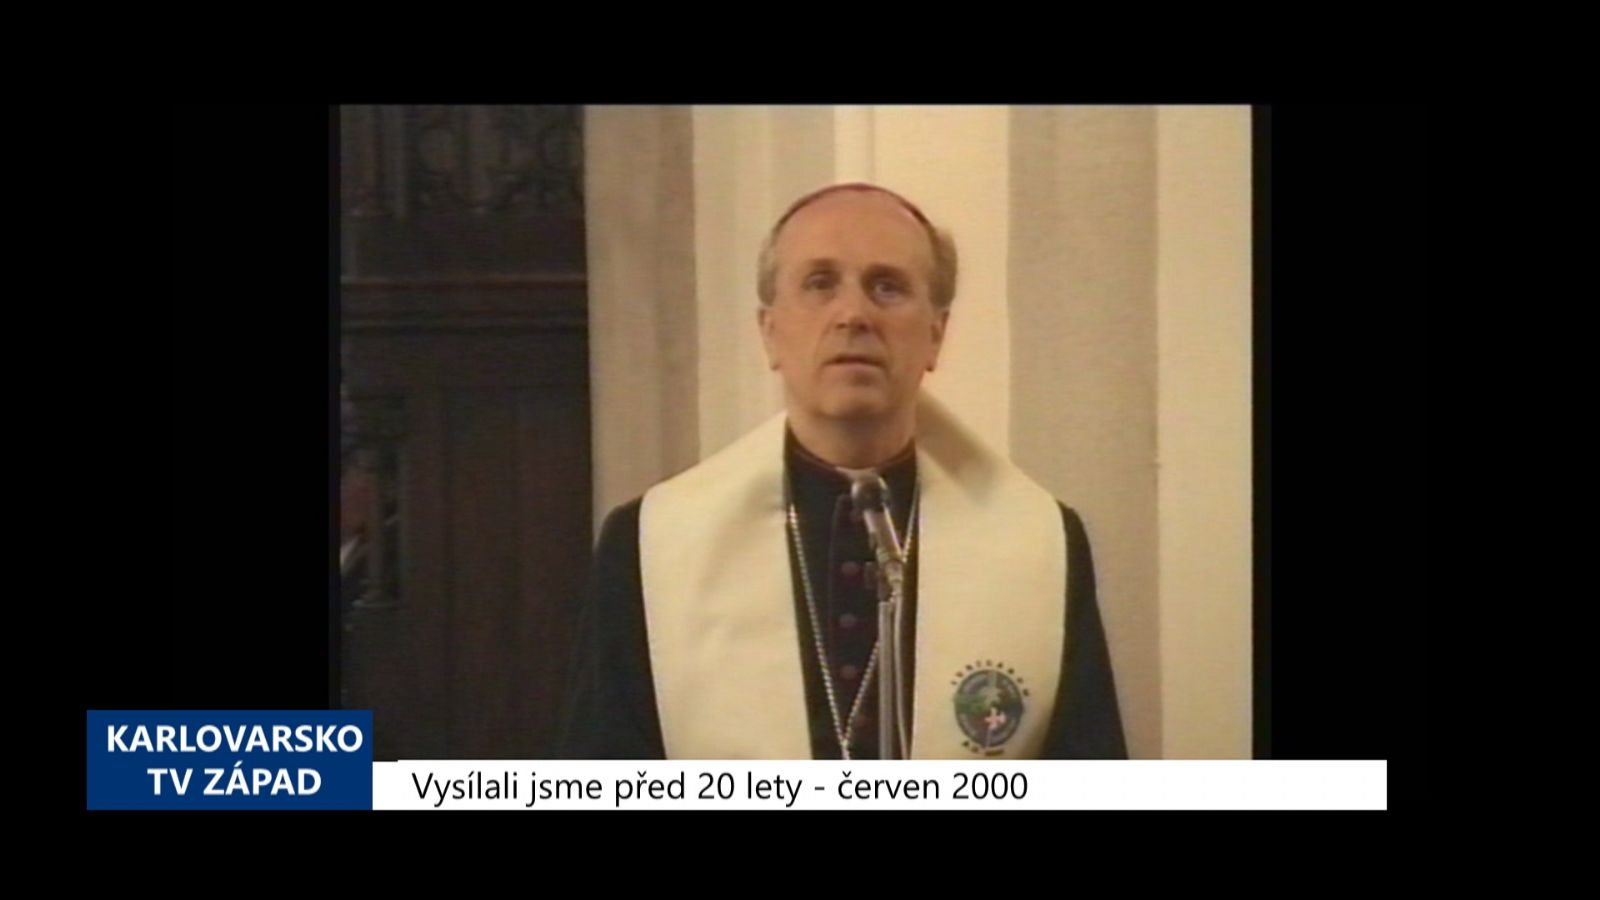 2000 – Cheb: Festival 2000 byl zahájen ekumenickou mší (TV Západ)